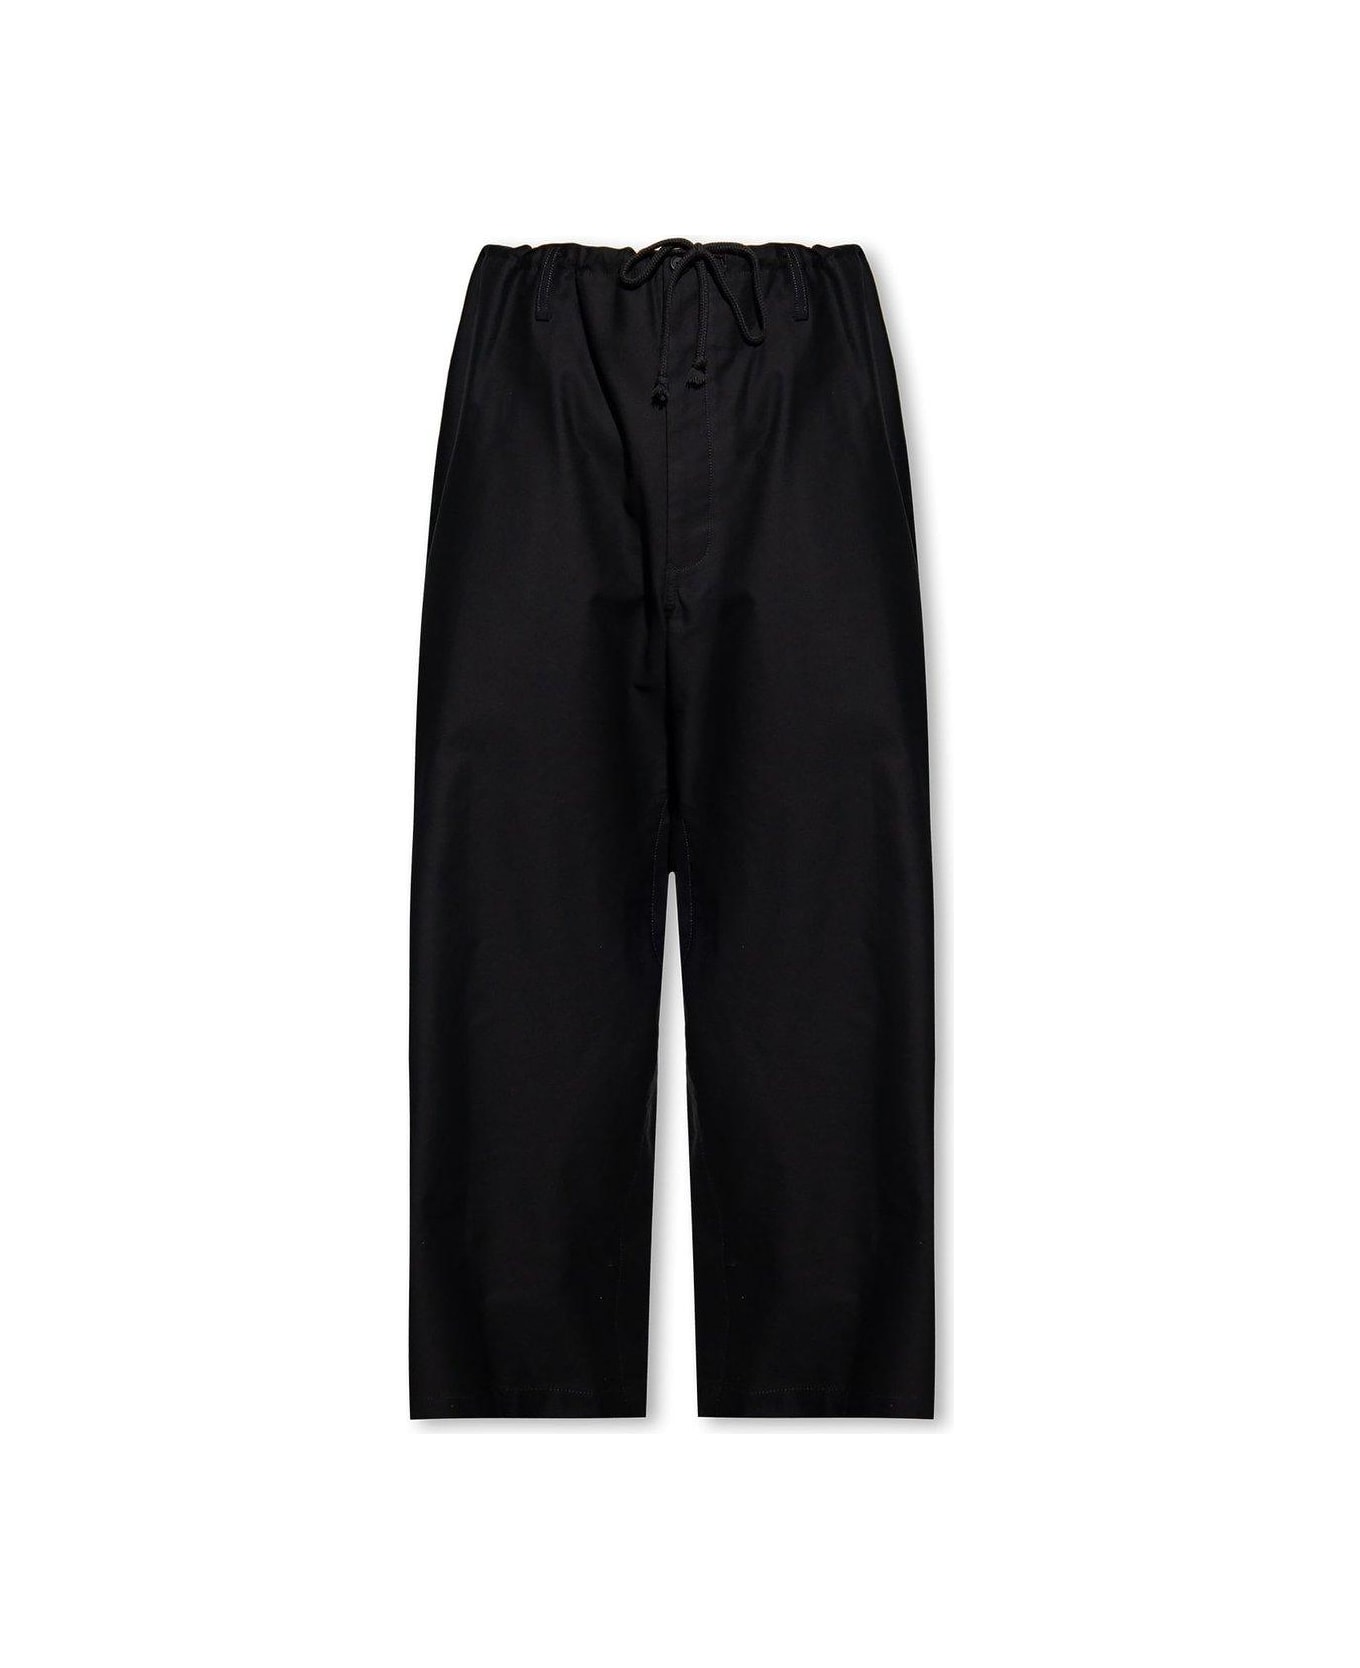 Yohji Yamamoto Relaxed Fitting Trousers - Black